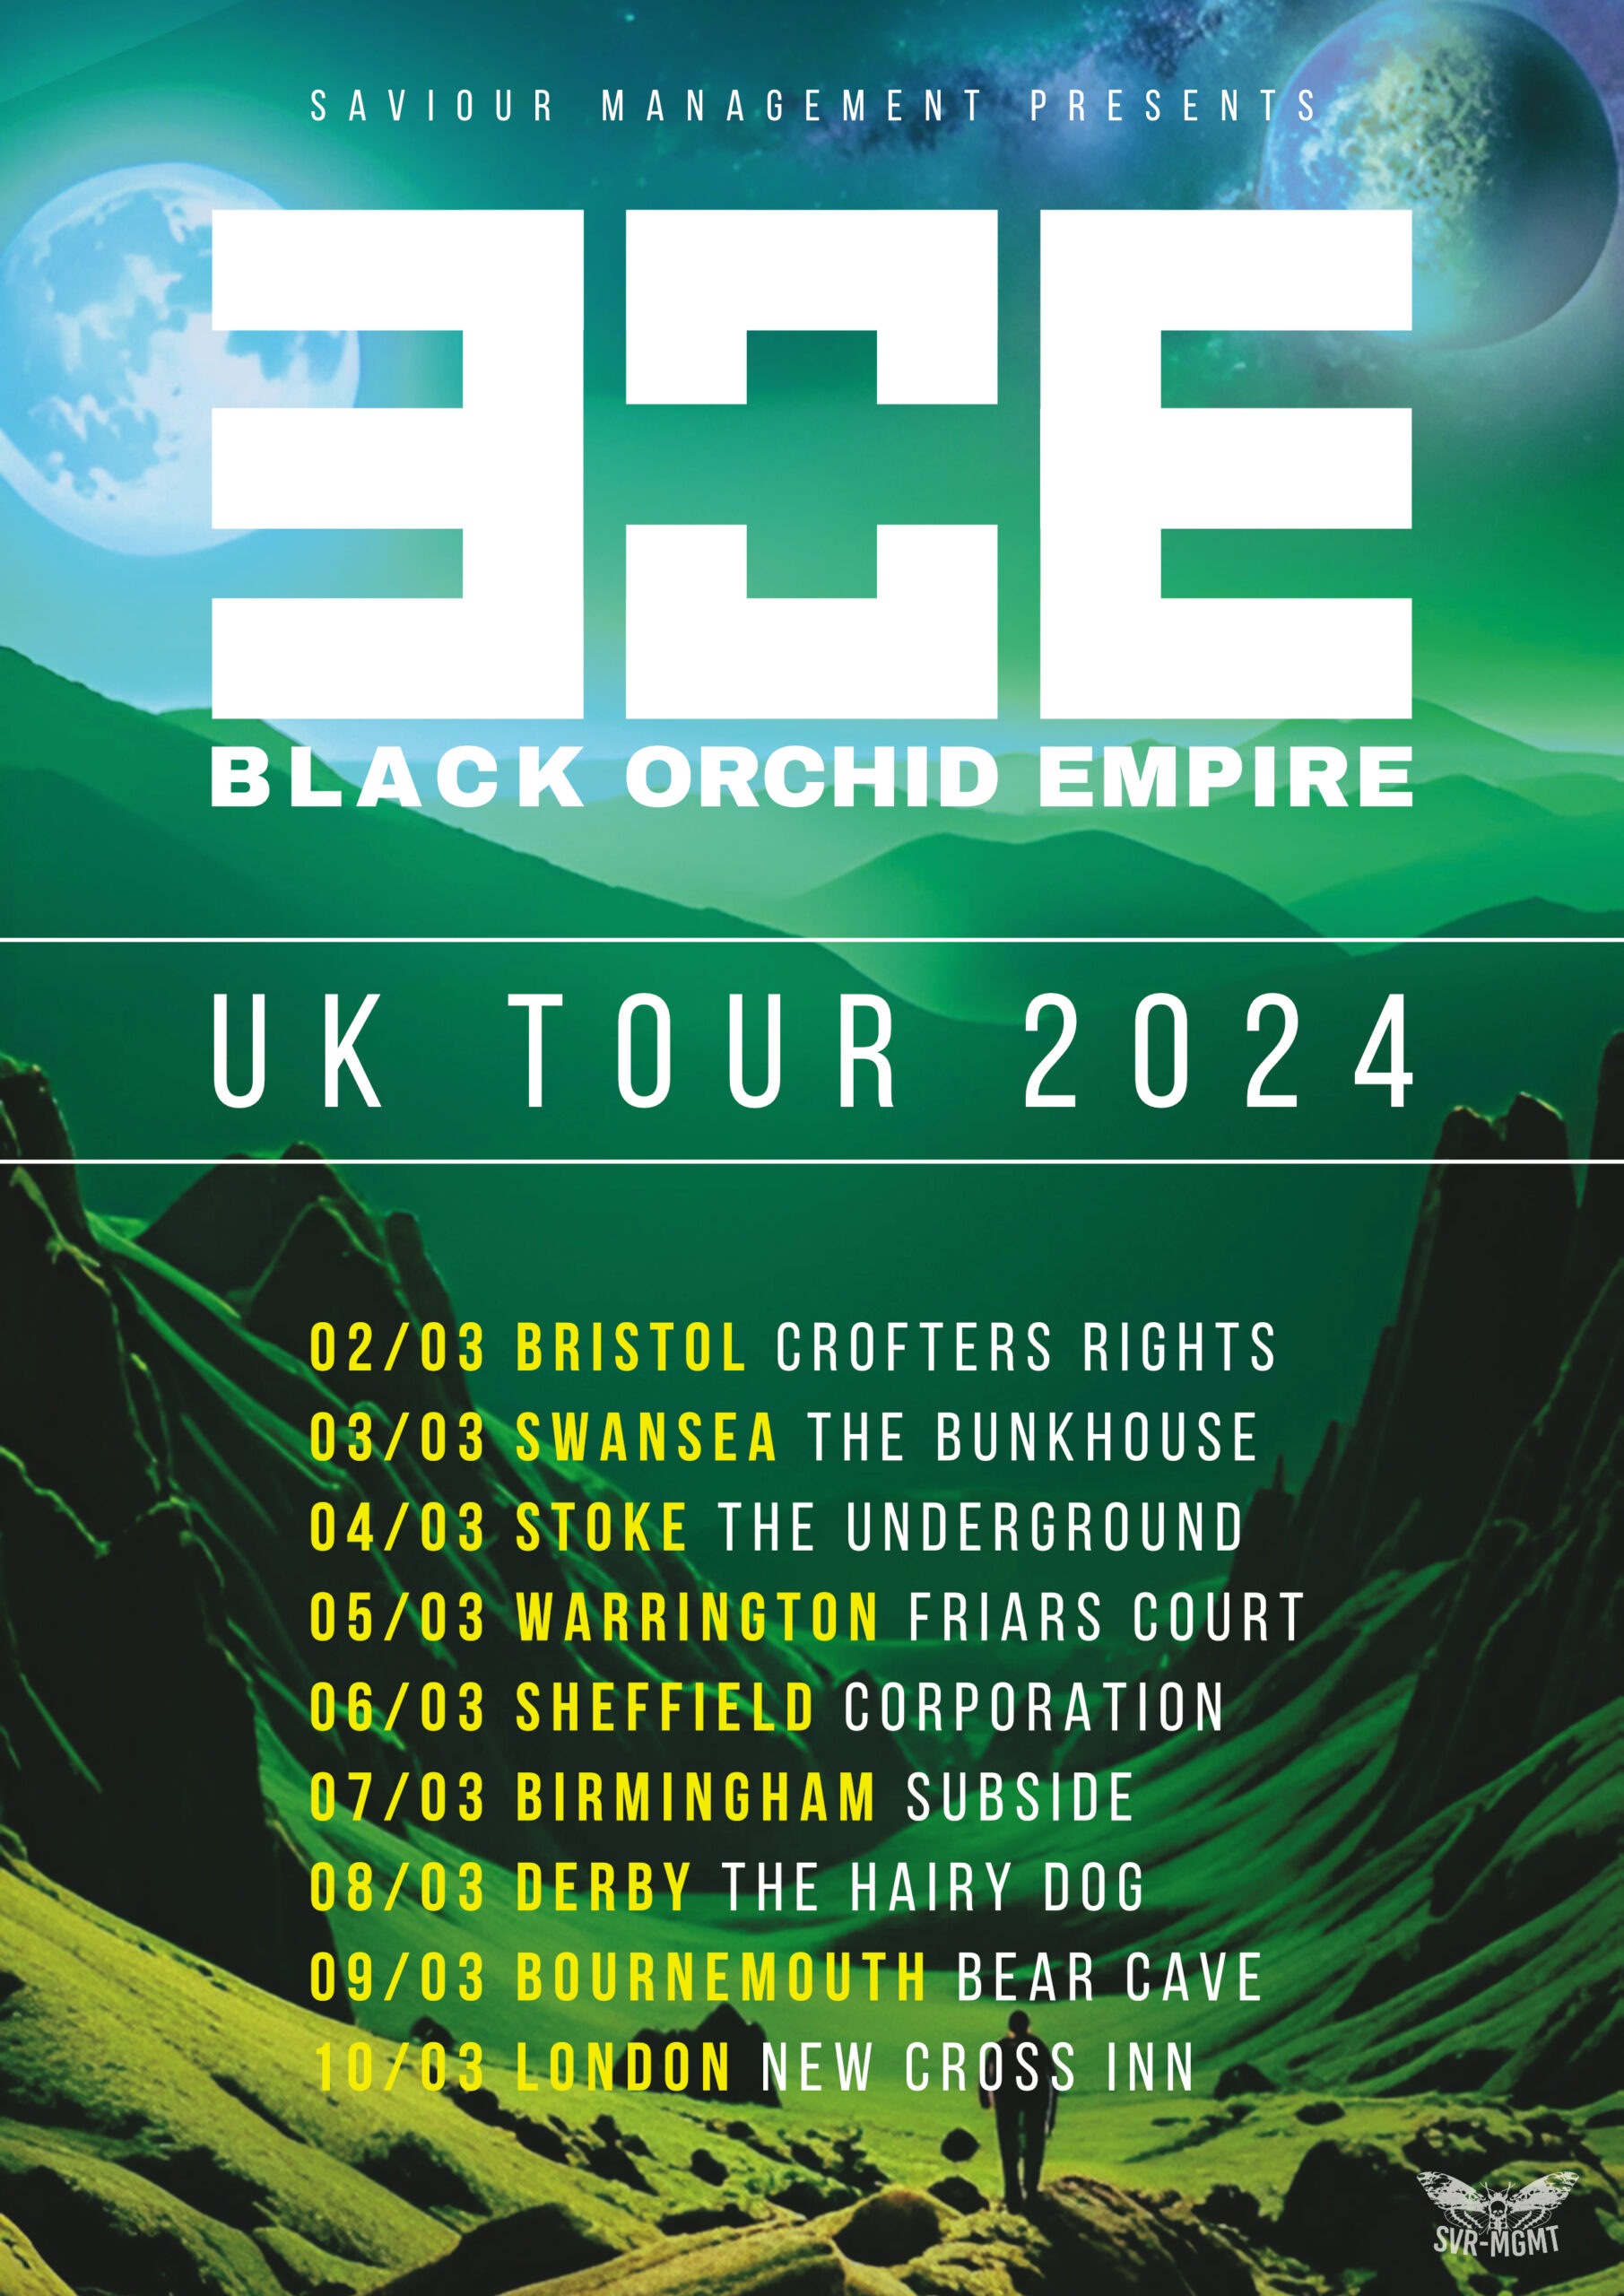 Black Orchid Empire UK Tour 2024
